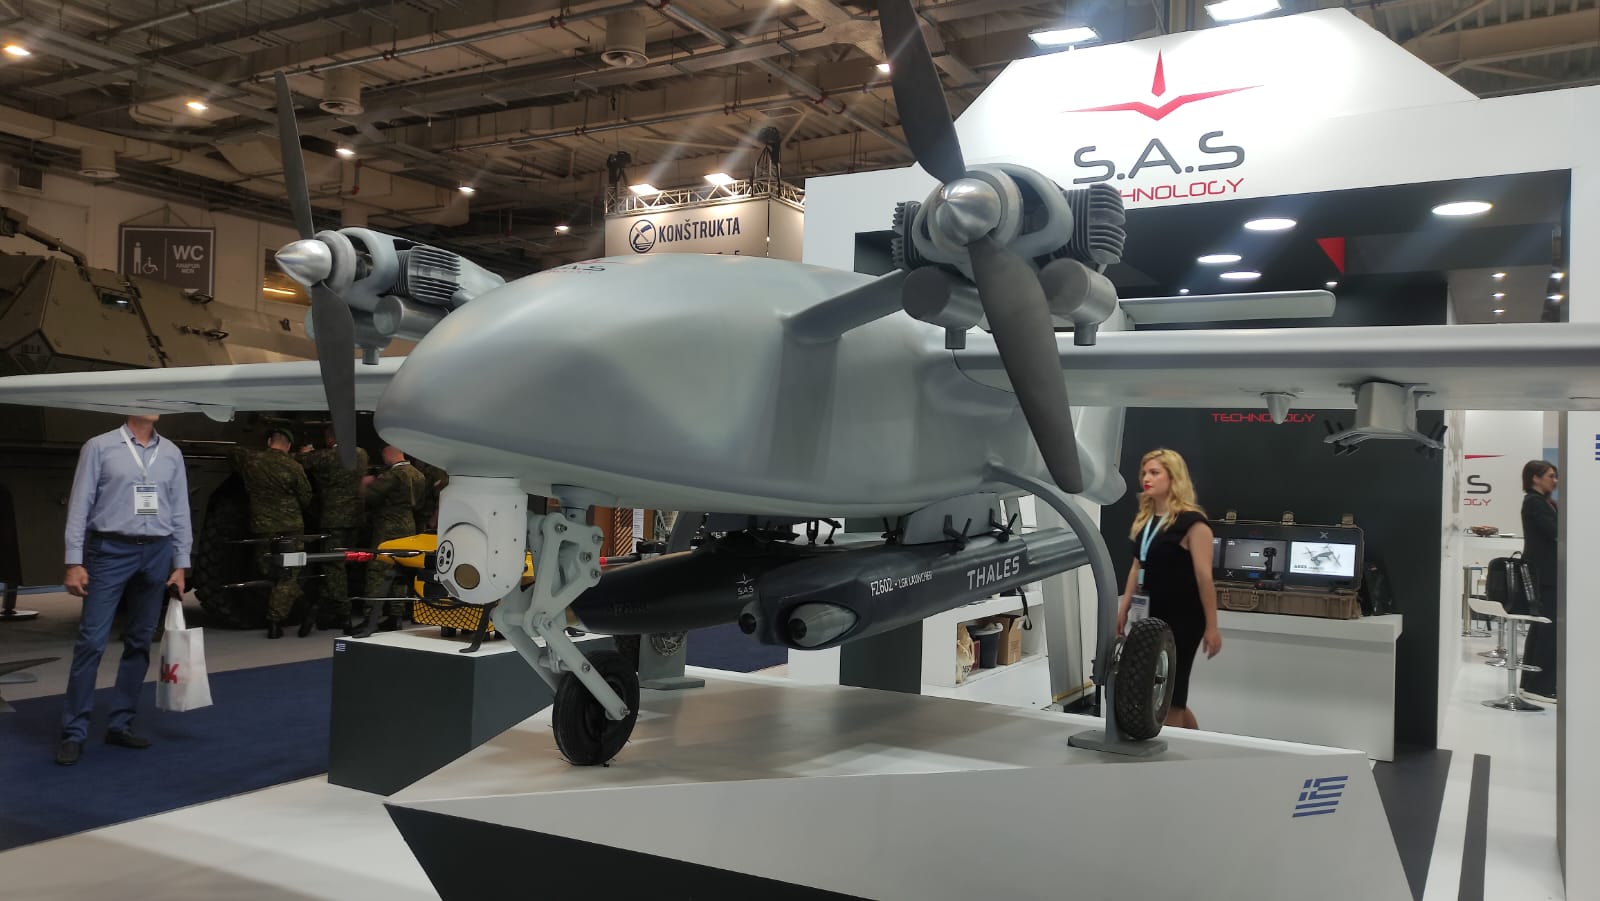 Presentato Talos II, un drone da ricognizione con una velocità di 200 km/h, un'autonomia di 500 km e una durata di volo di oltre 20 ore.